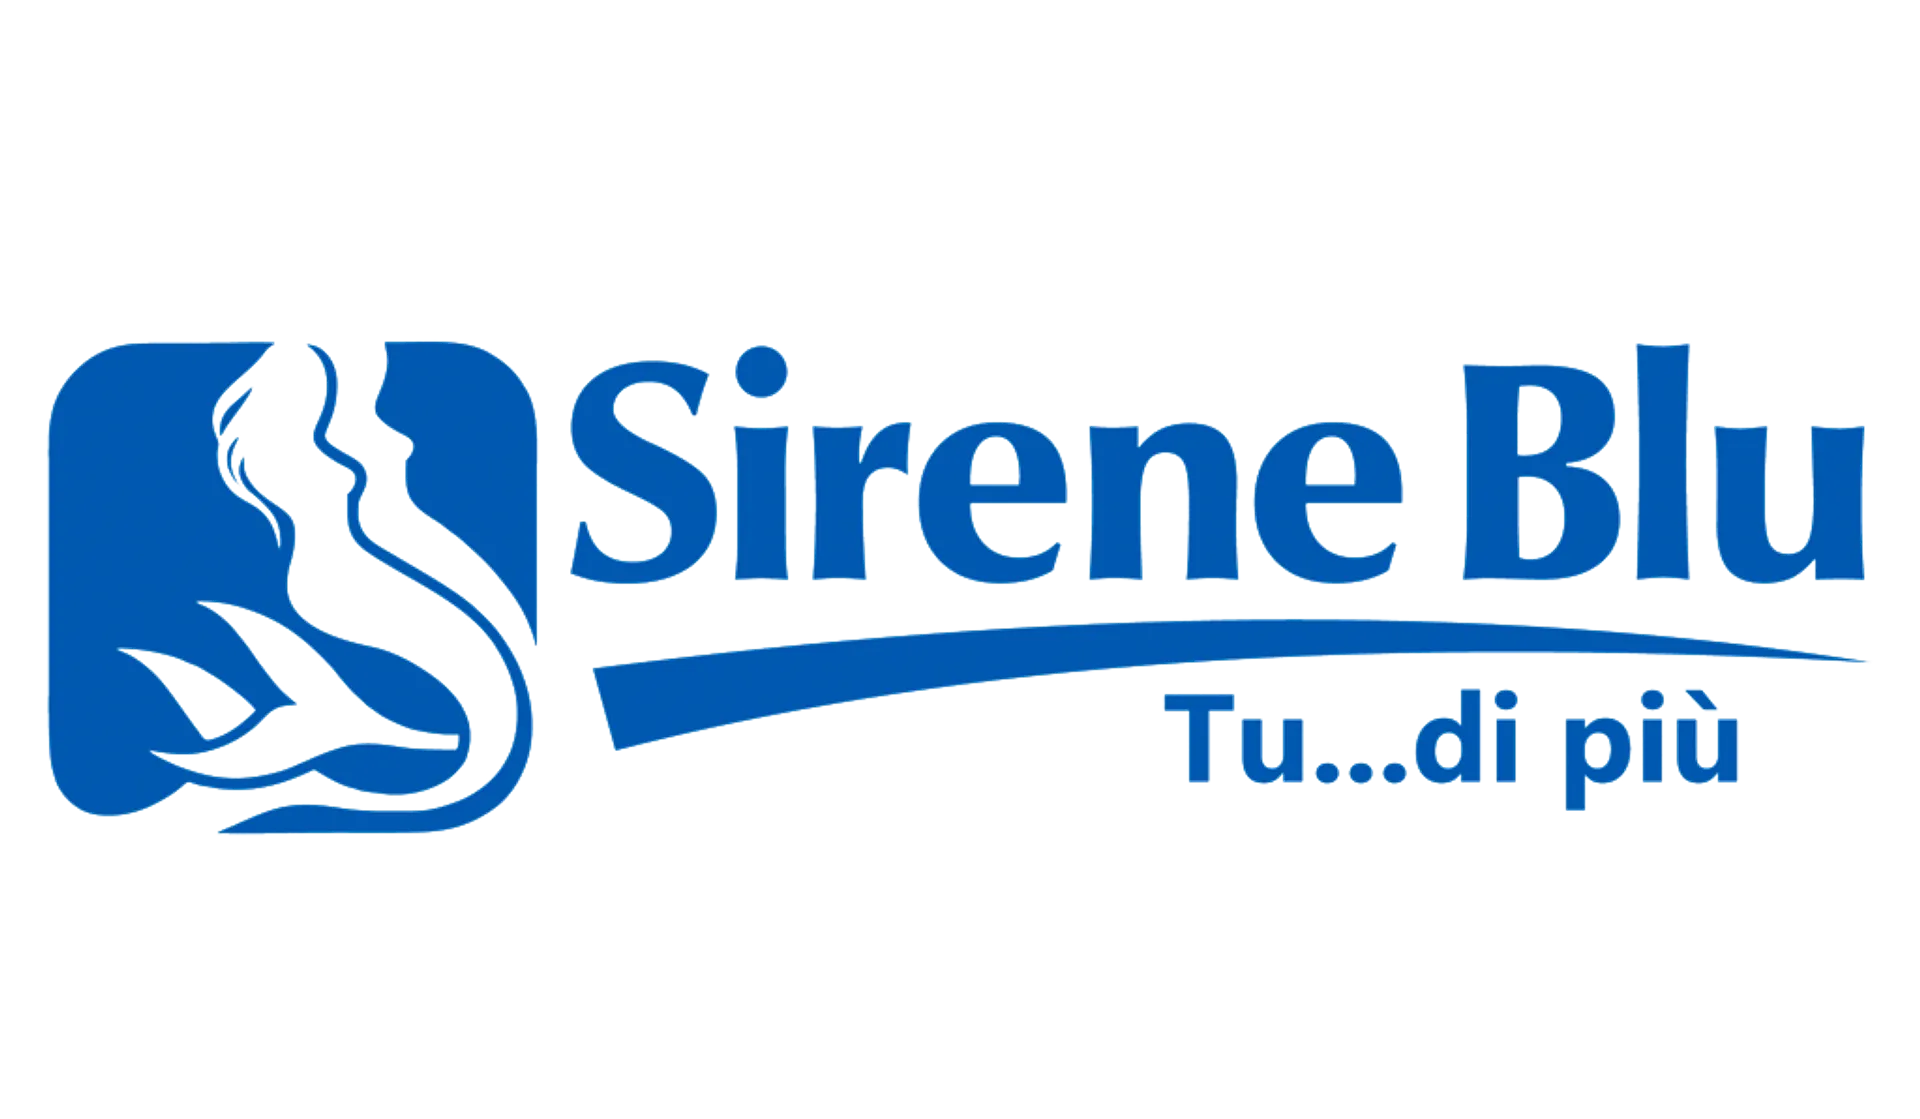 SIRENE BLU logo